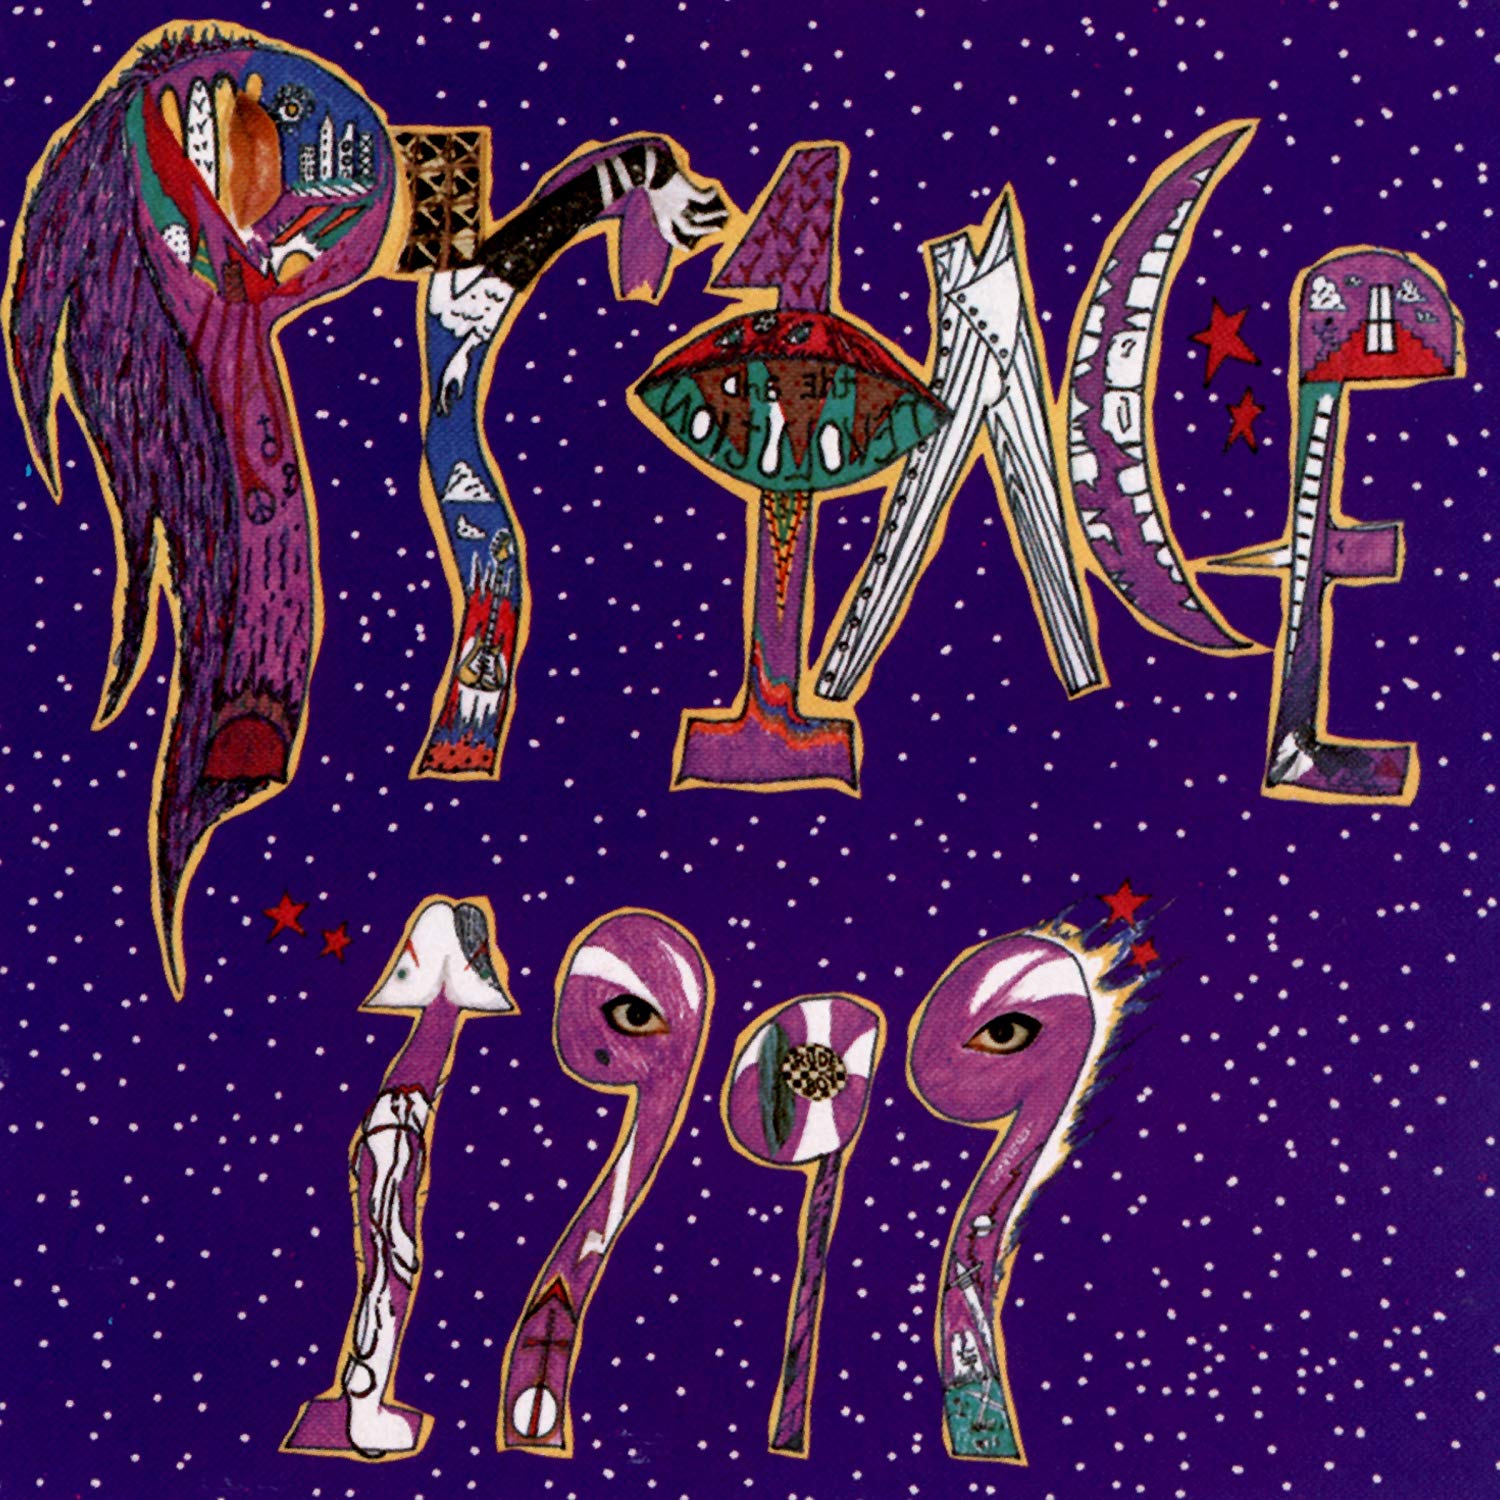 Prince – 1999 [2 LP] (180 Gram Vinyl)